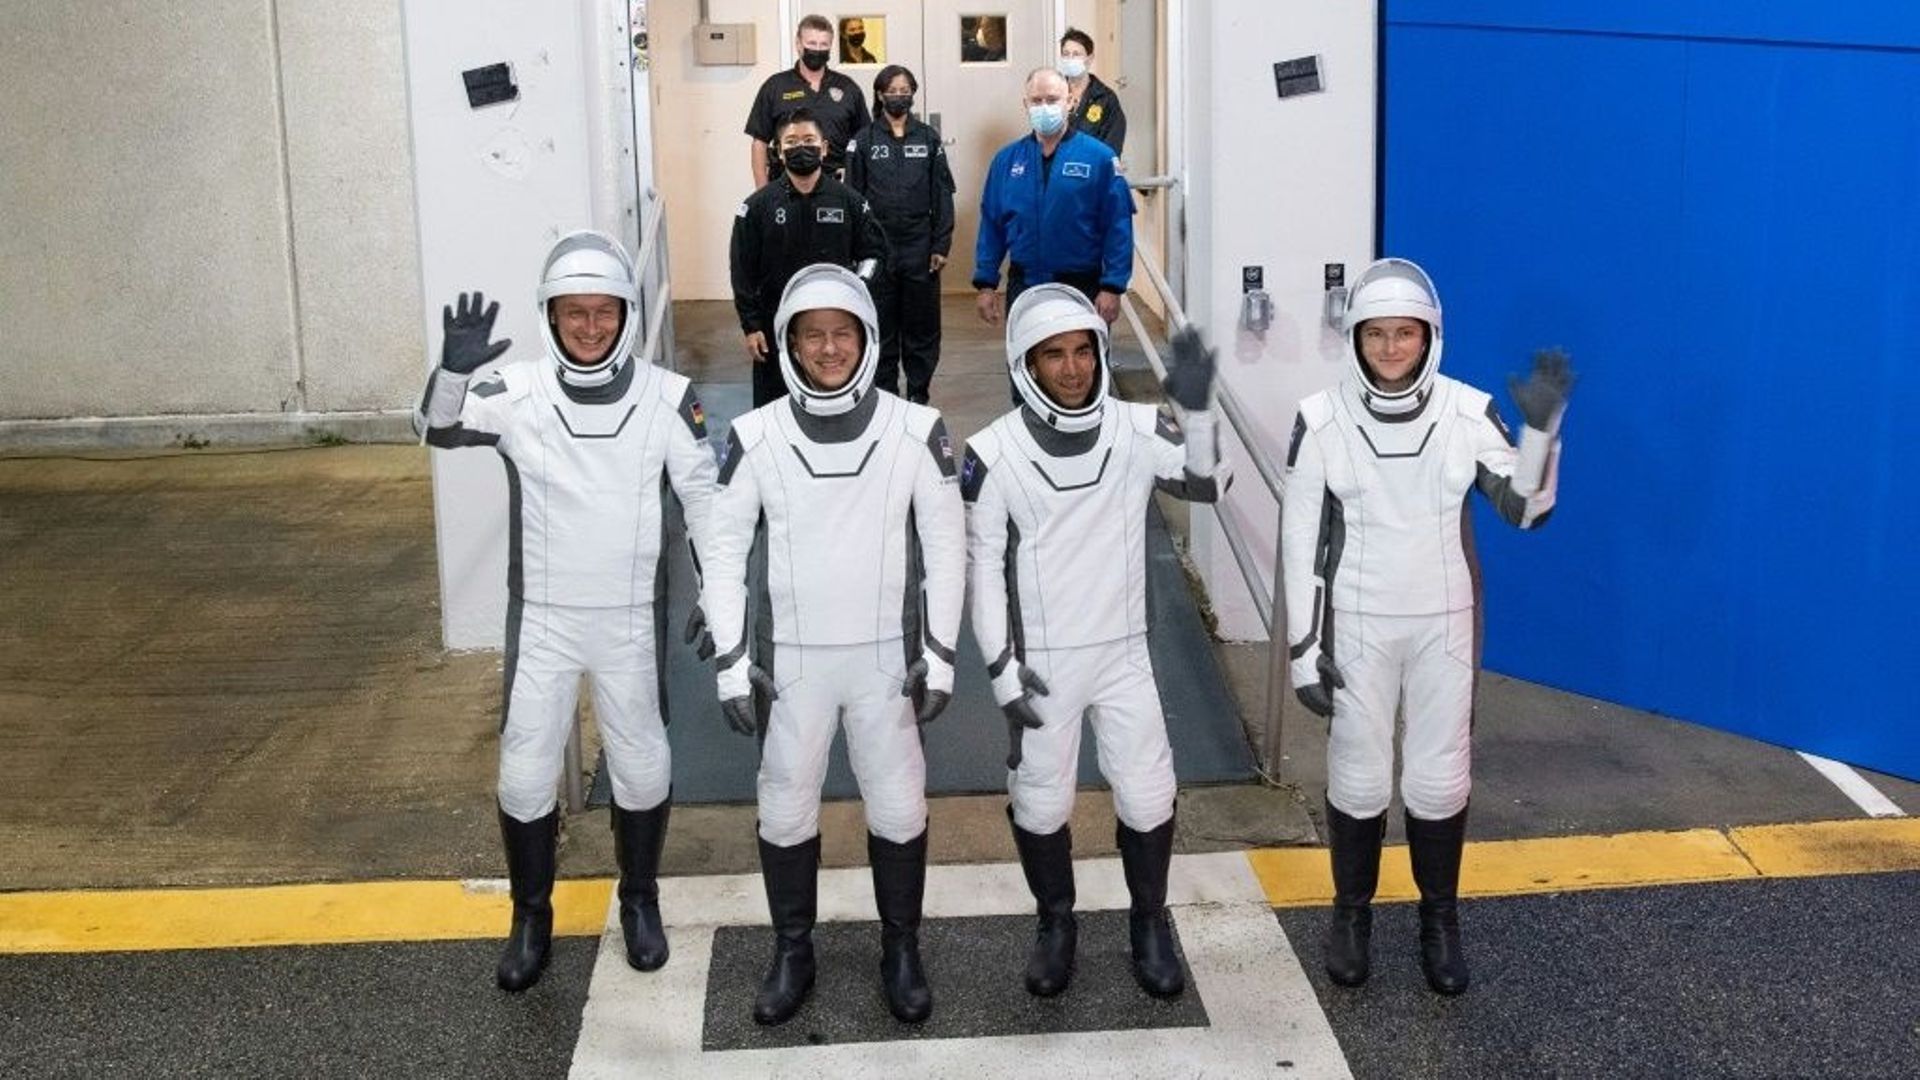 Les astronautes Matthias Maurer, Tom Marshburn, Raja Chari et Kayla Barron de la mission Crew-3, dans leurs combinaisons SpaceX, lors d’une répétition du vol qui doit décoller pour l’ISS ce 10 novembre